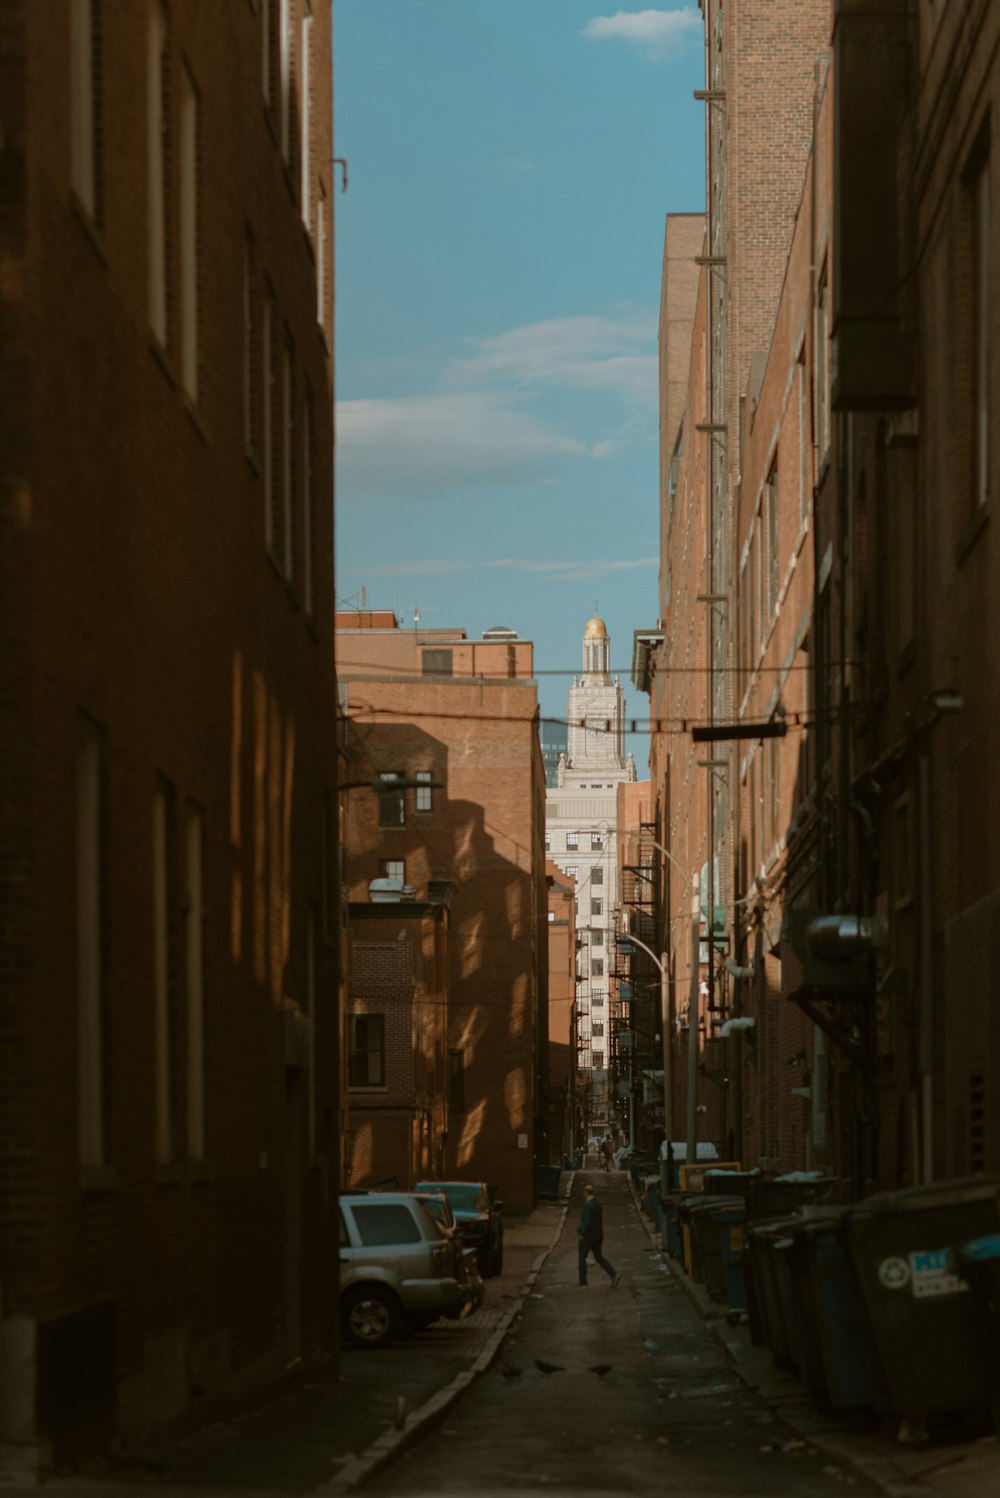 Una persona caminando por una calle estrecha en una ciudad